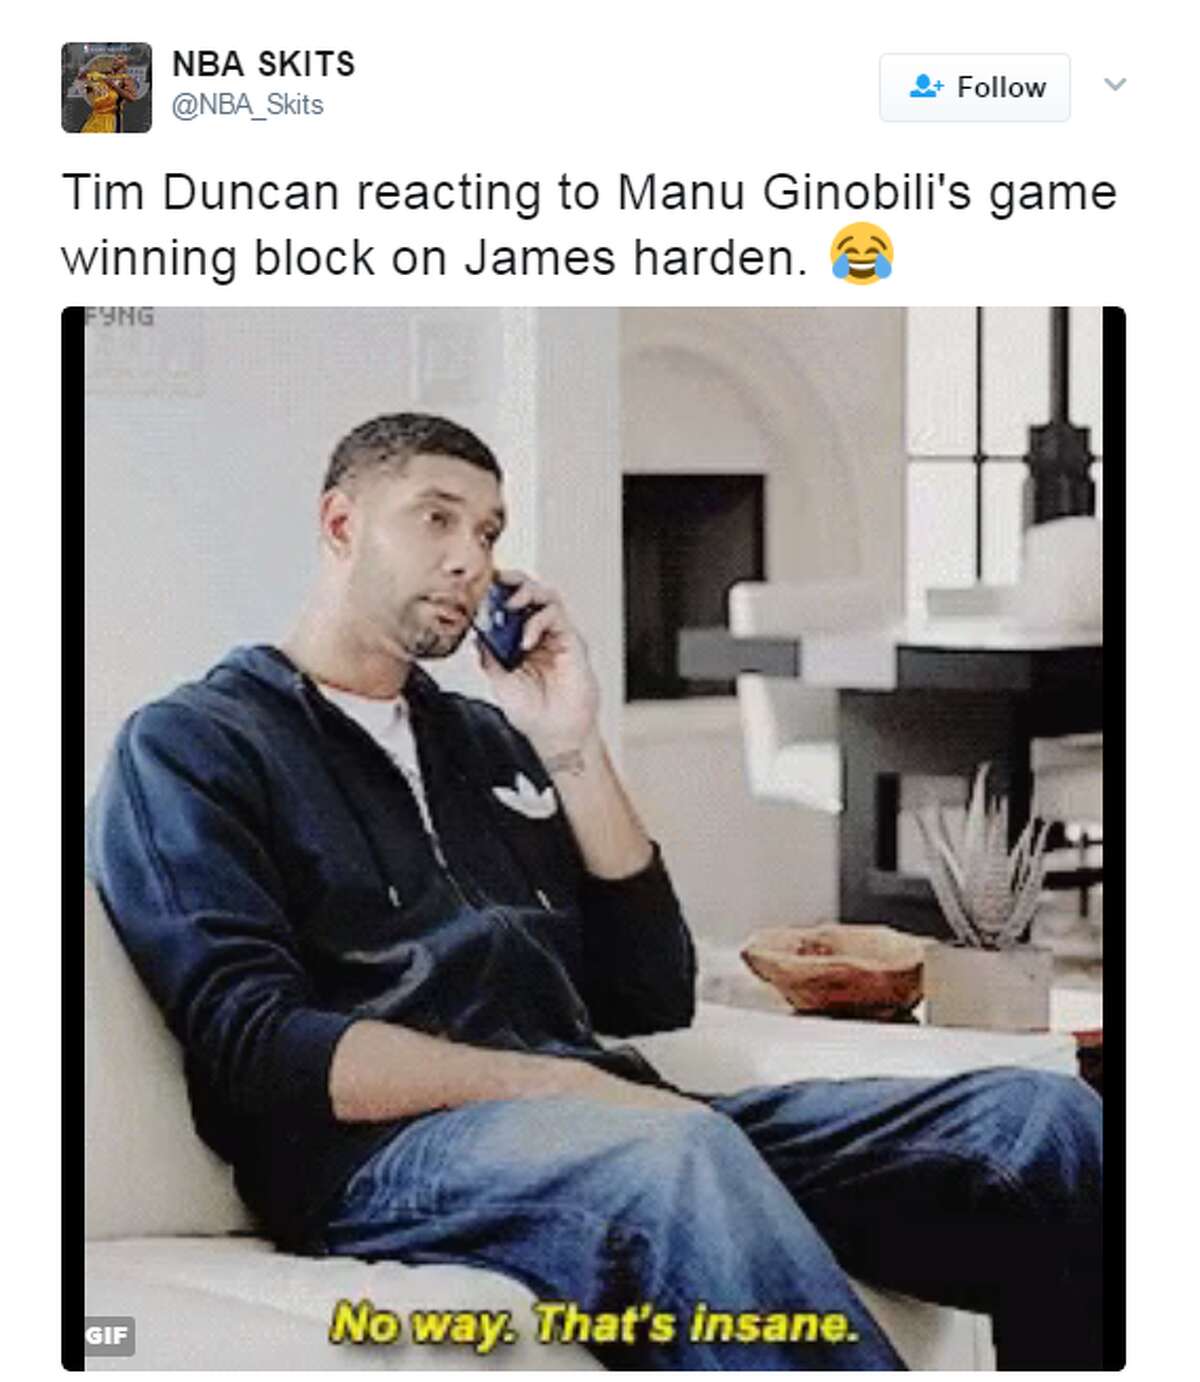 "Tim Duncan reacting to Manu Ginobili's game winning block on James harden," @NBA_Skits.